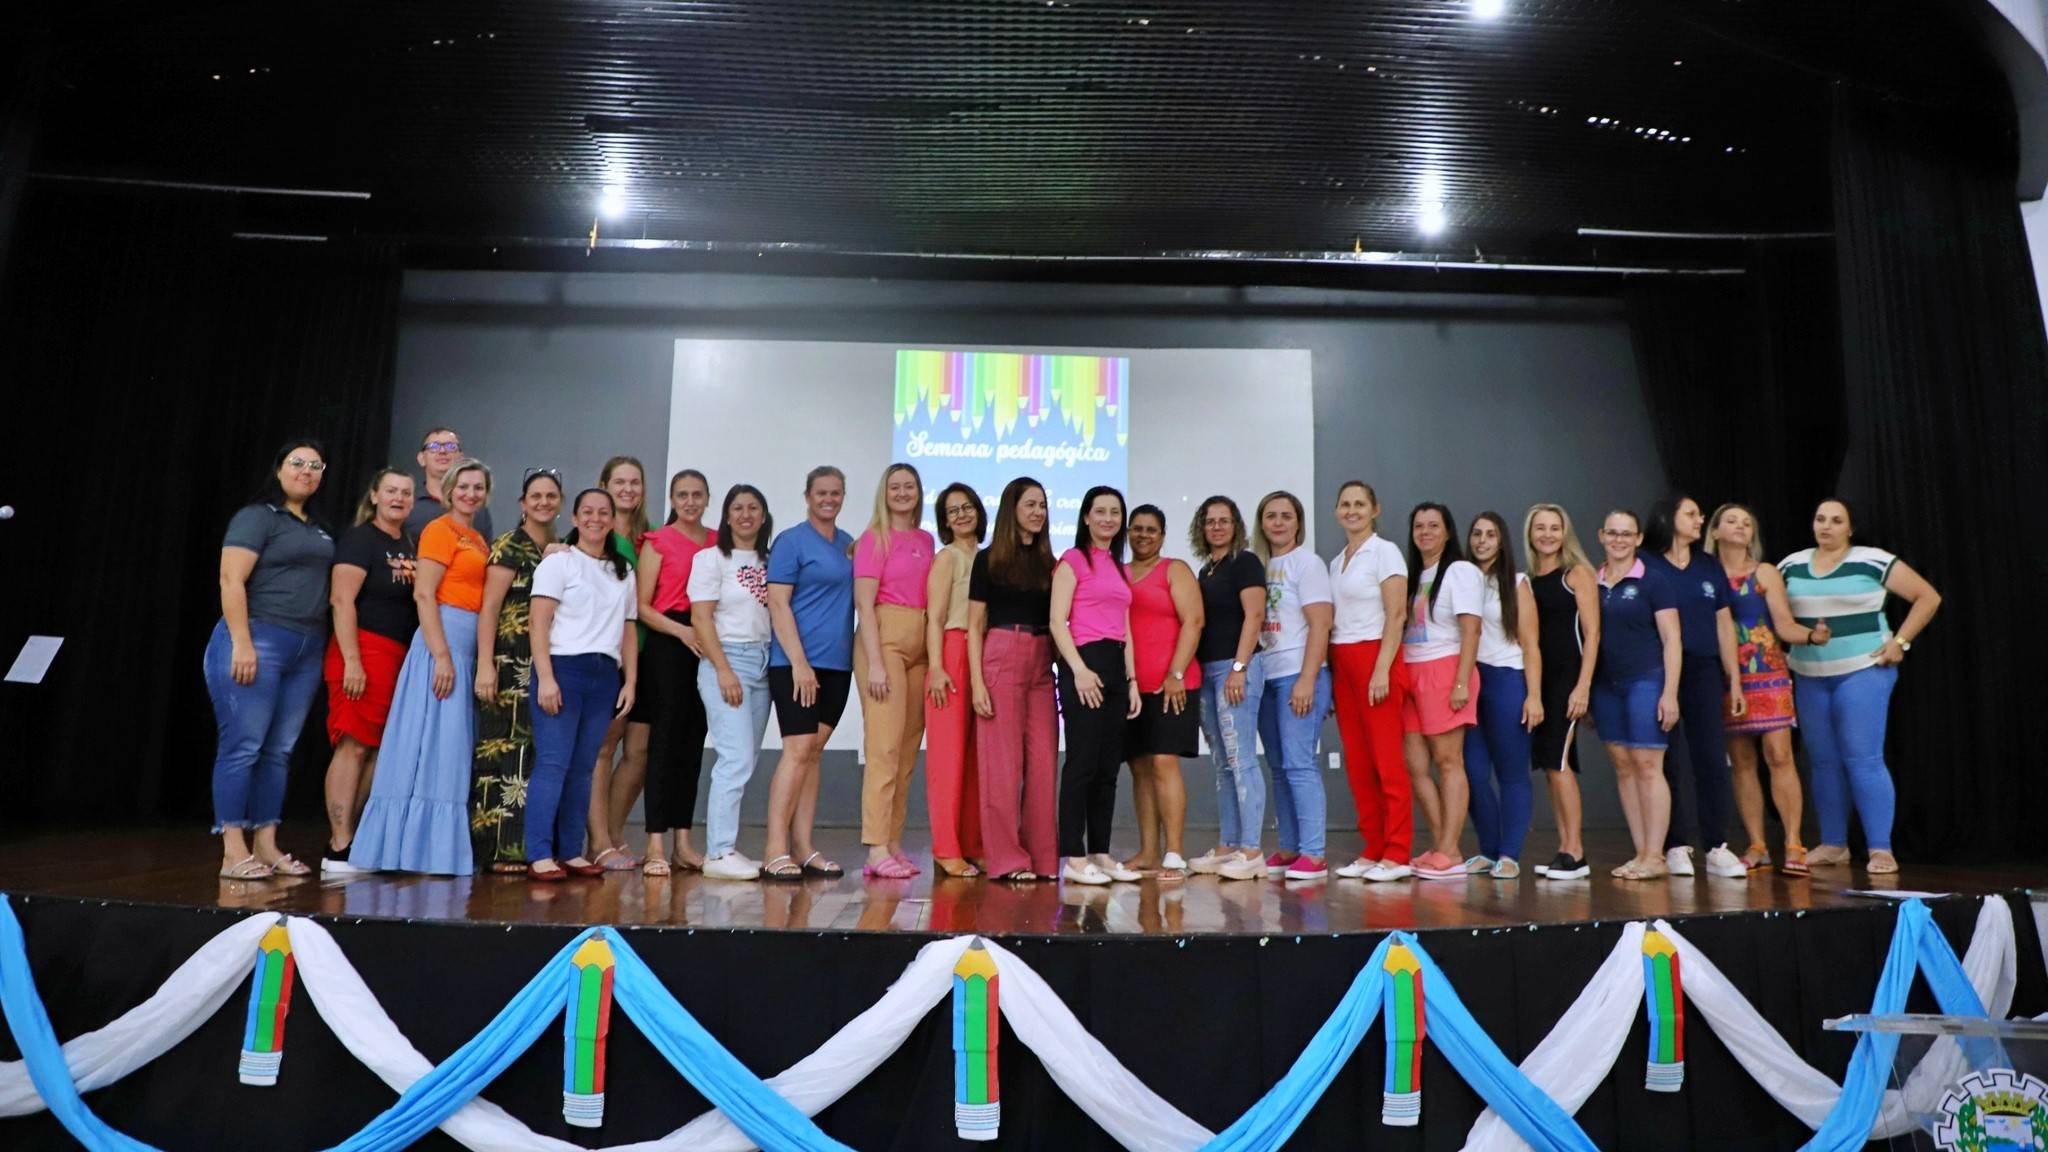 Semana Pedagógica: Formação e integração para um ano letivo de sucesso em Itaipulândia